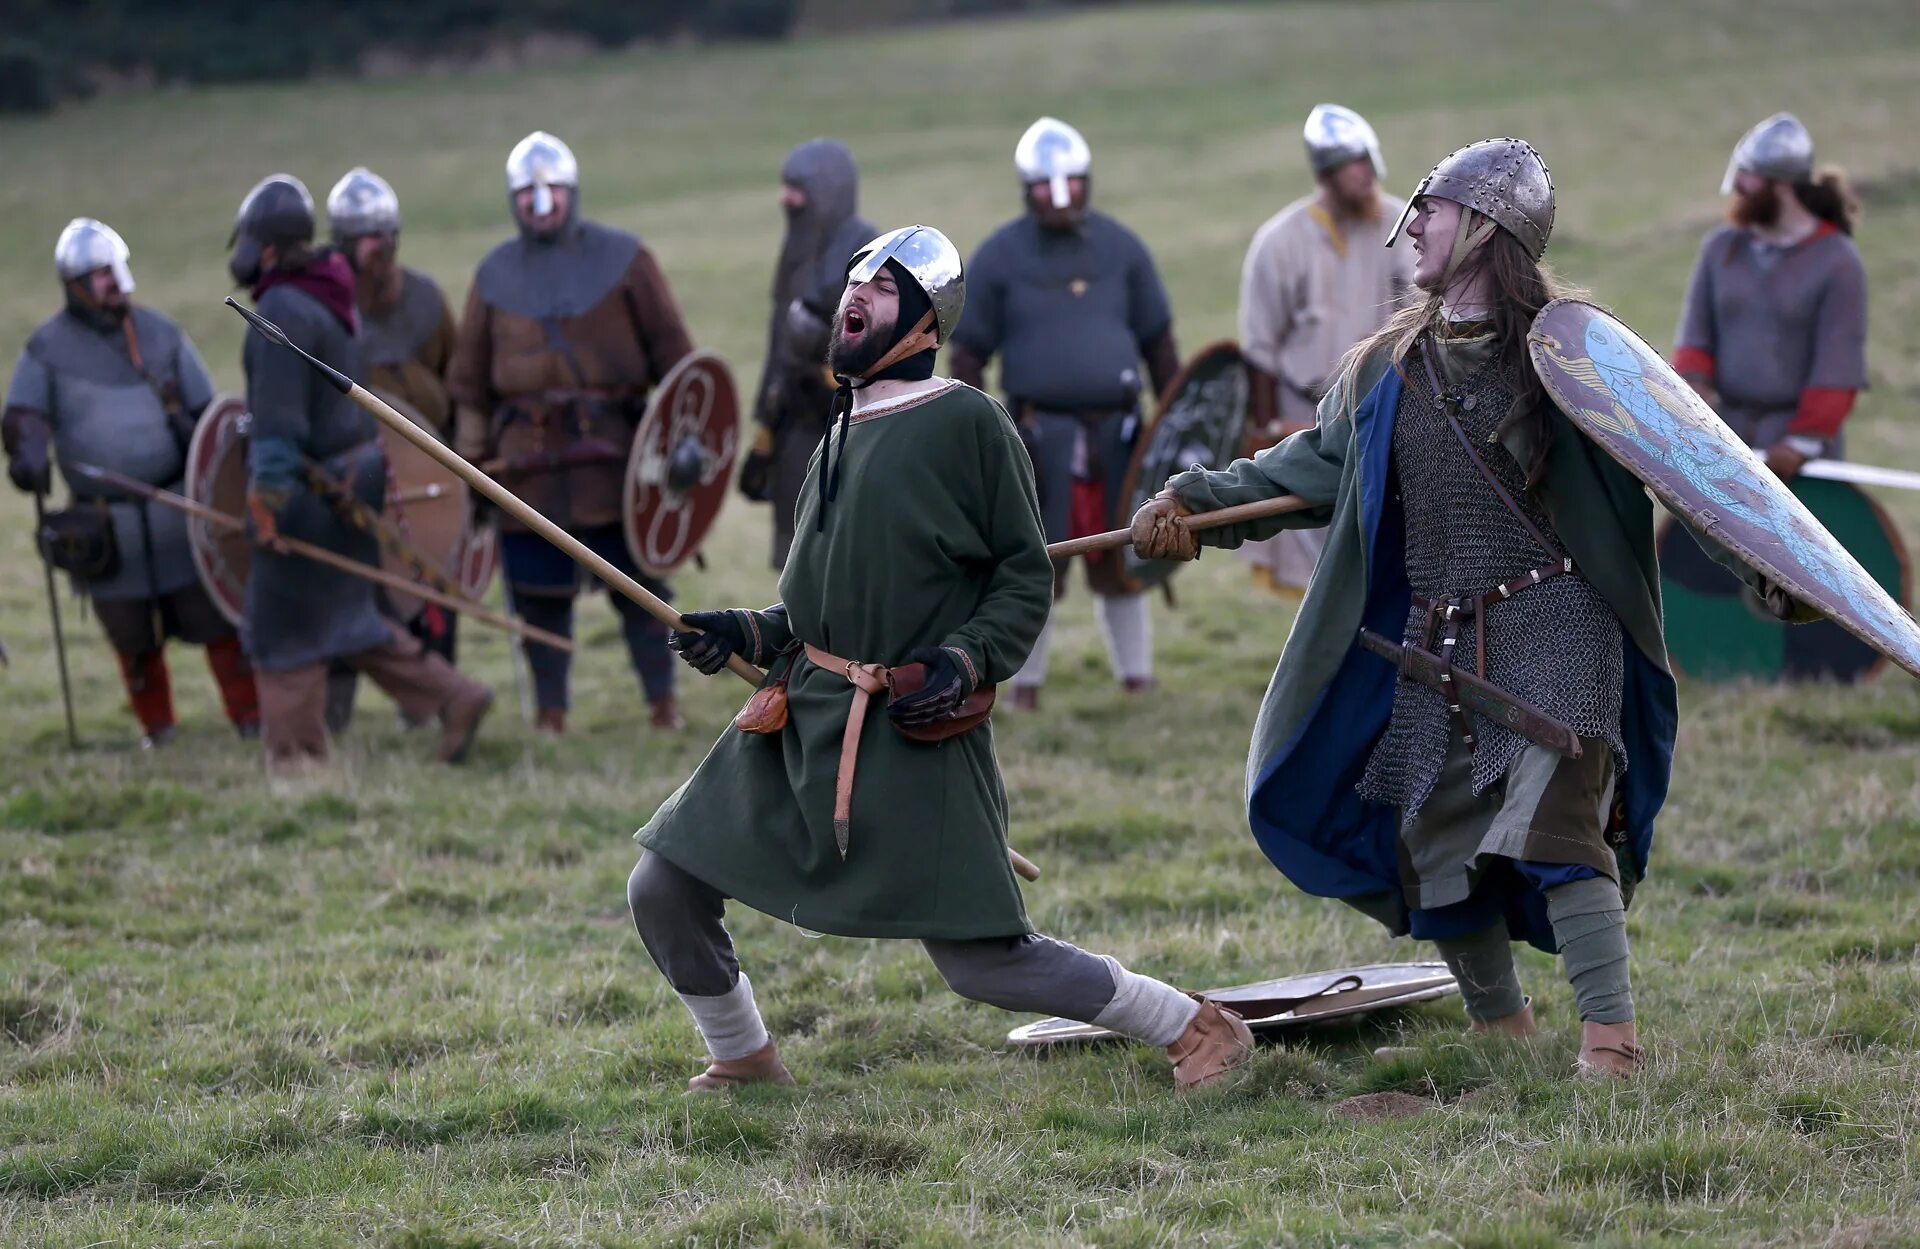 Battle res. Нормандский рыцарь Гастингс. Битва при Гастингсе реконструкция. Нормандский рыцарь 10-11 век. Реконструкция викингов 9-10 век.